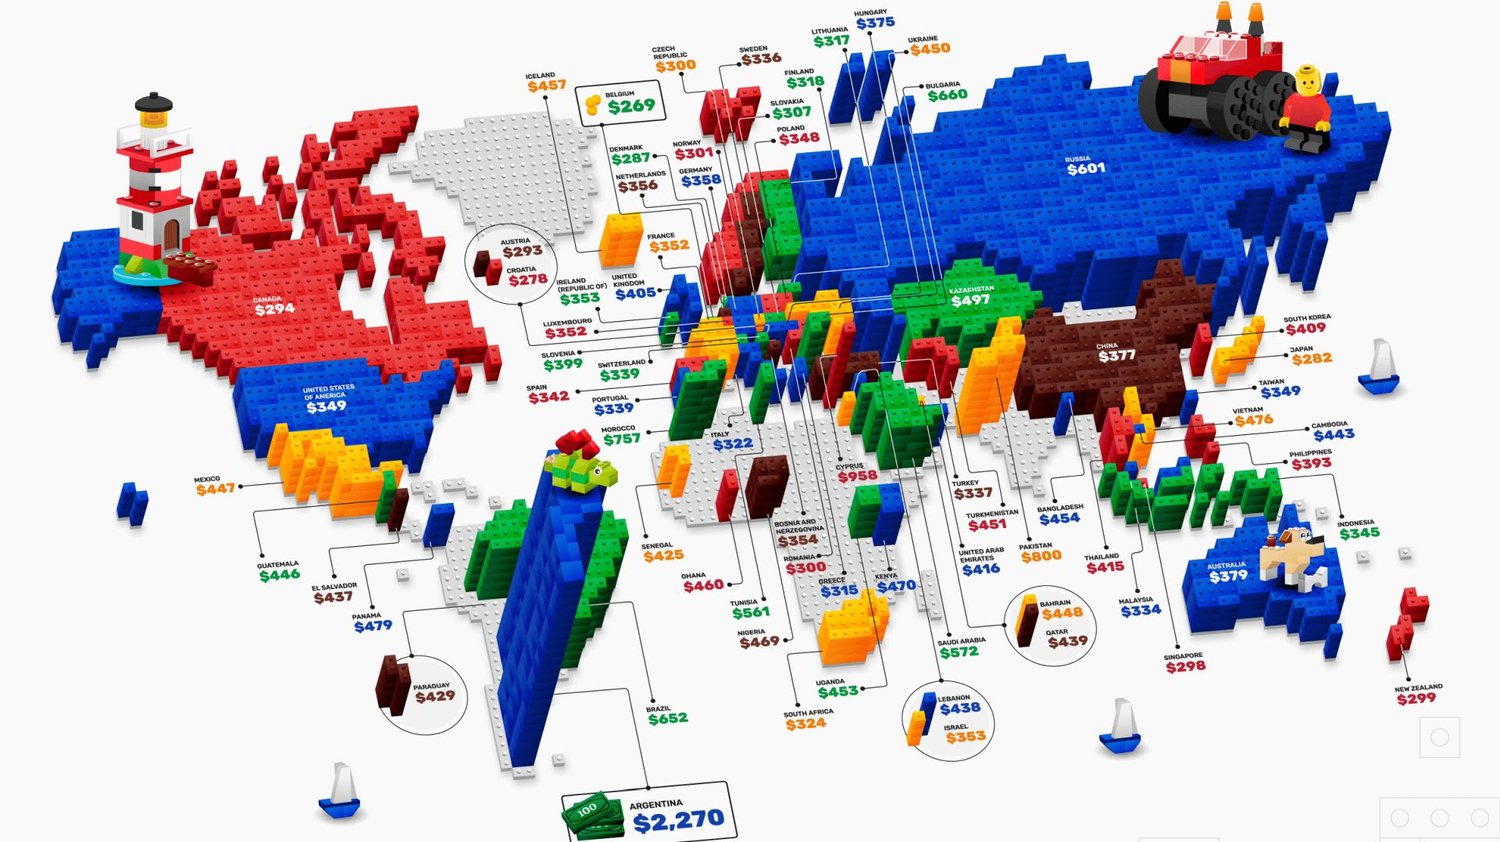 Découvrez combien coûtent les ensembles LEGO populaires dans d’autres pays